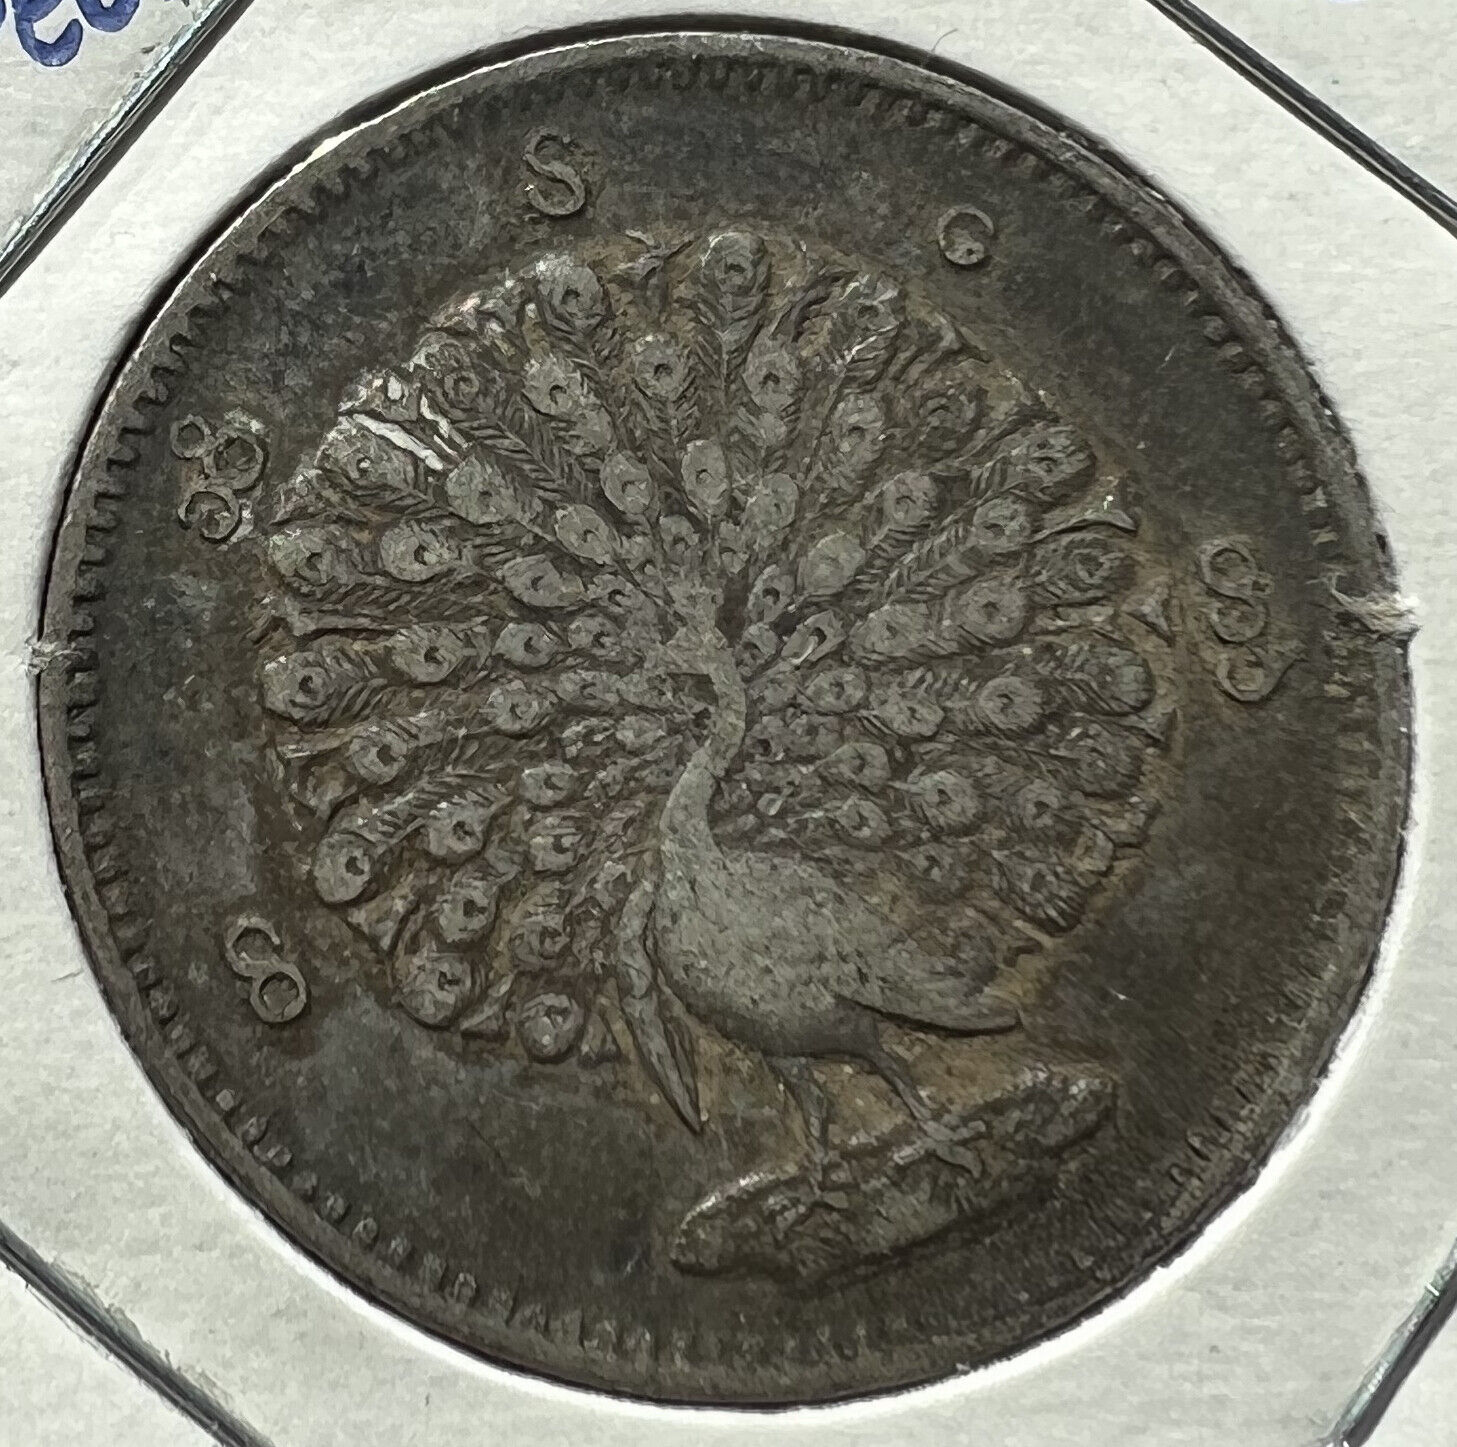 Burma (now Myanmar) 1852 / Cs1214 Silver Rupee / 1 Kyat Km-10